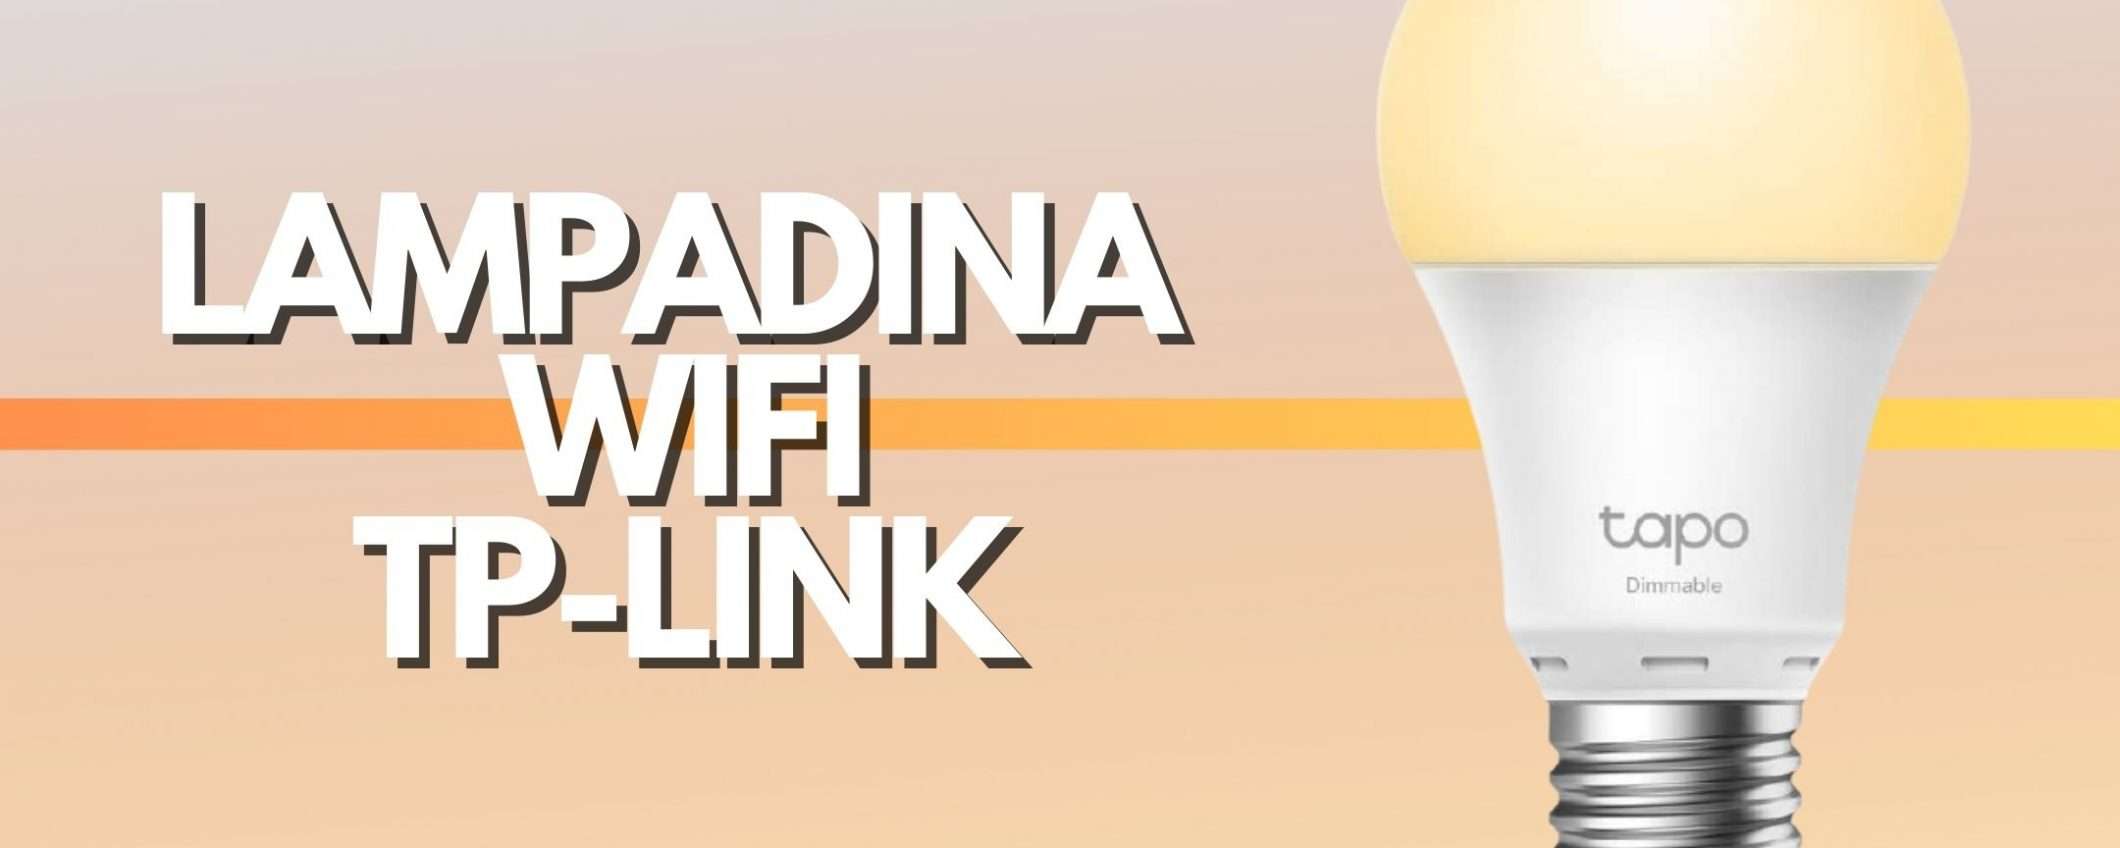 Lampadina WiFi TP LINK a meno di 10€: occasione da non perdere